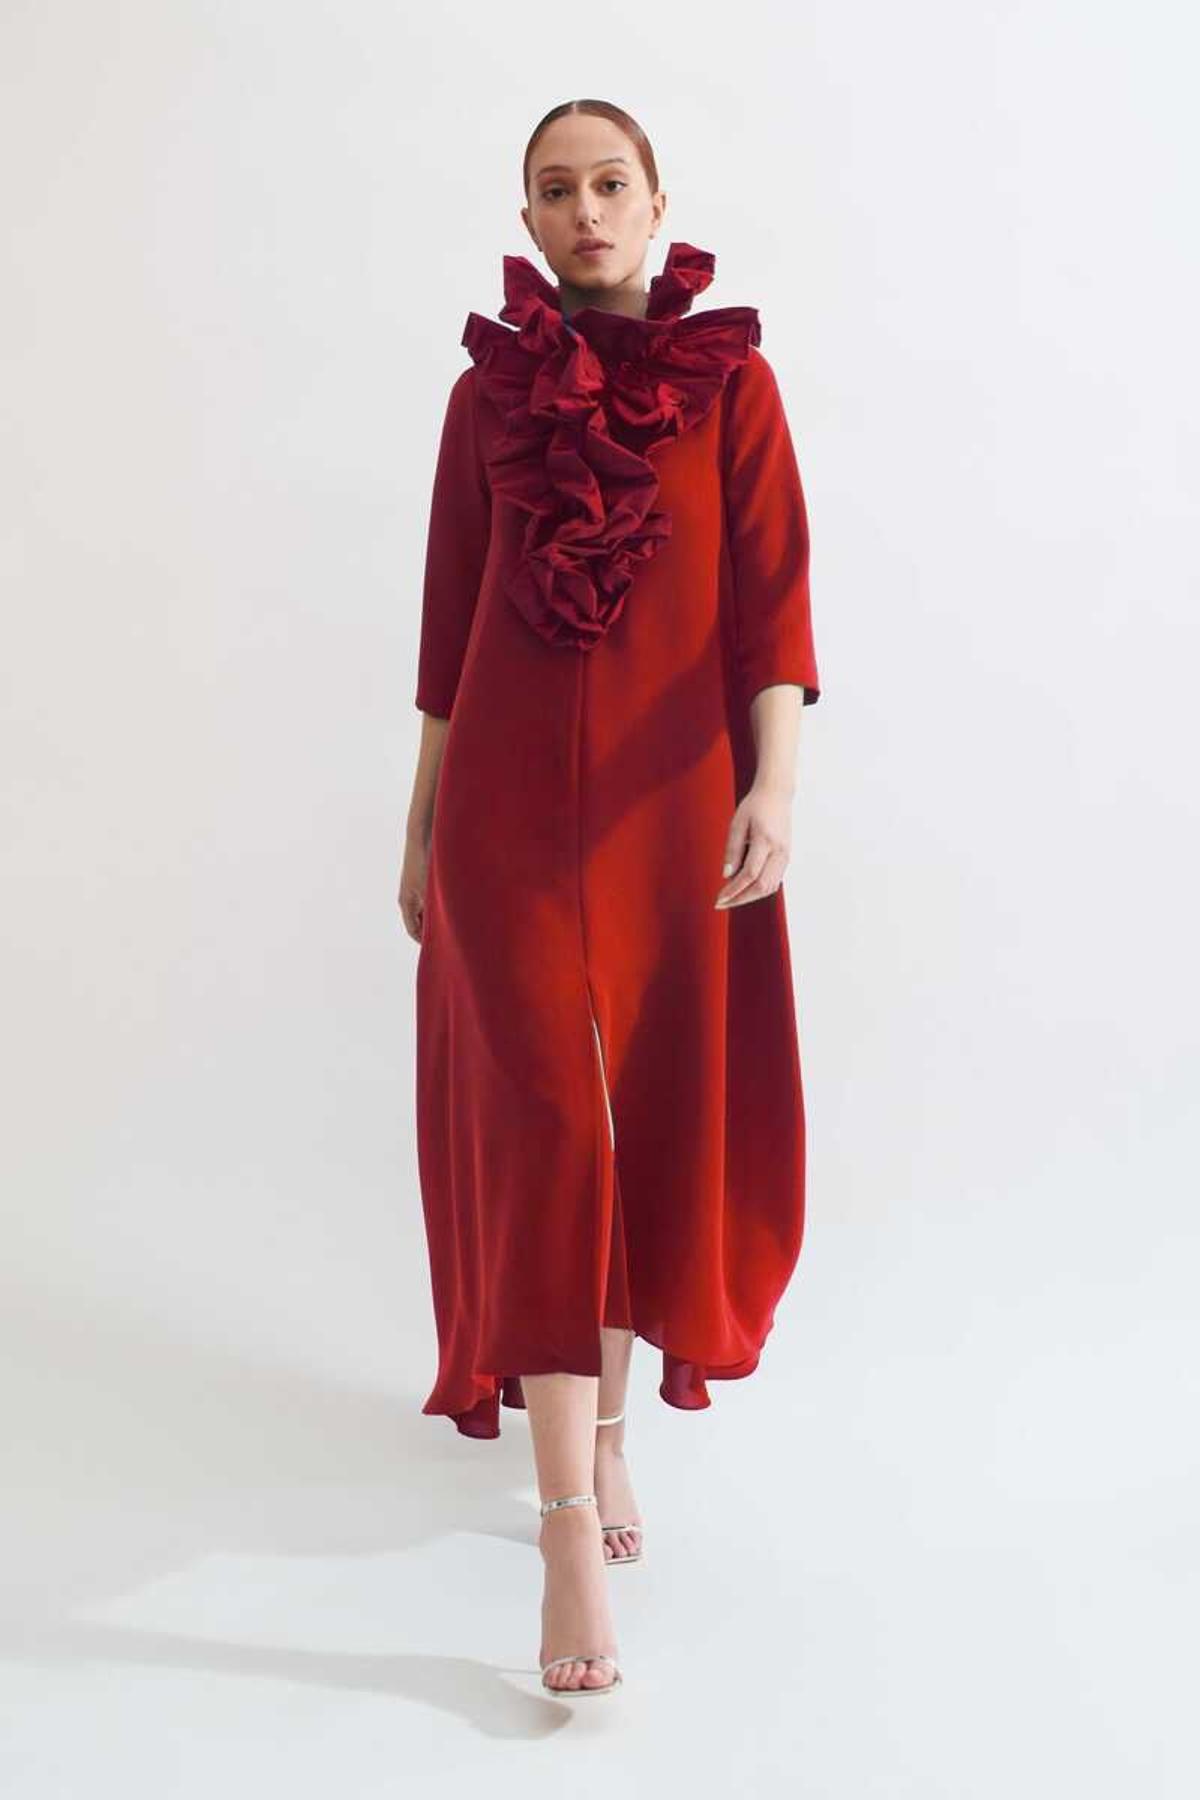 Vestido Thea rojo de Boüret